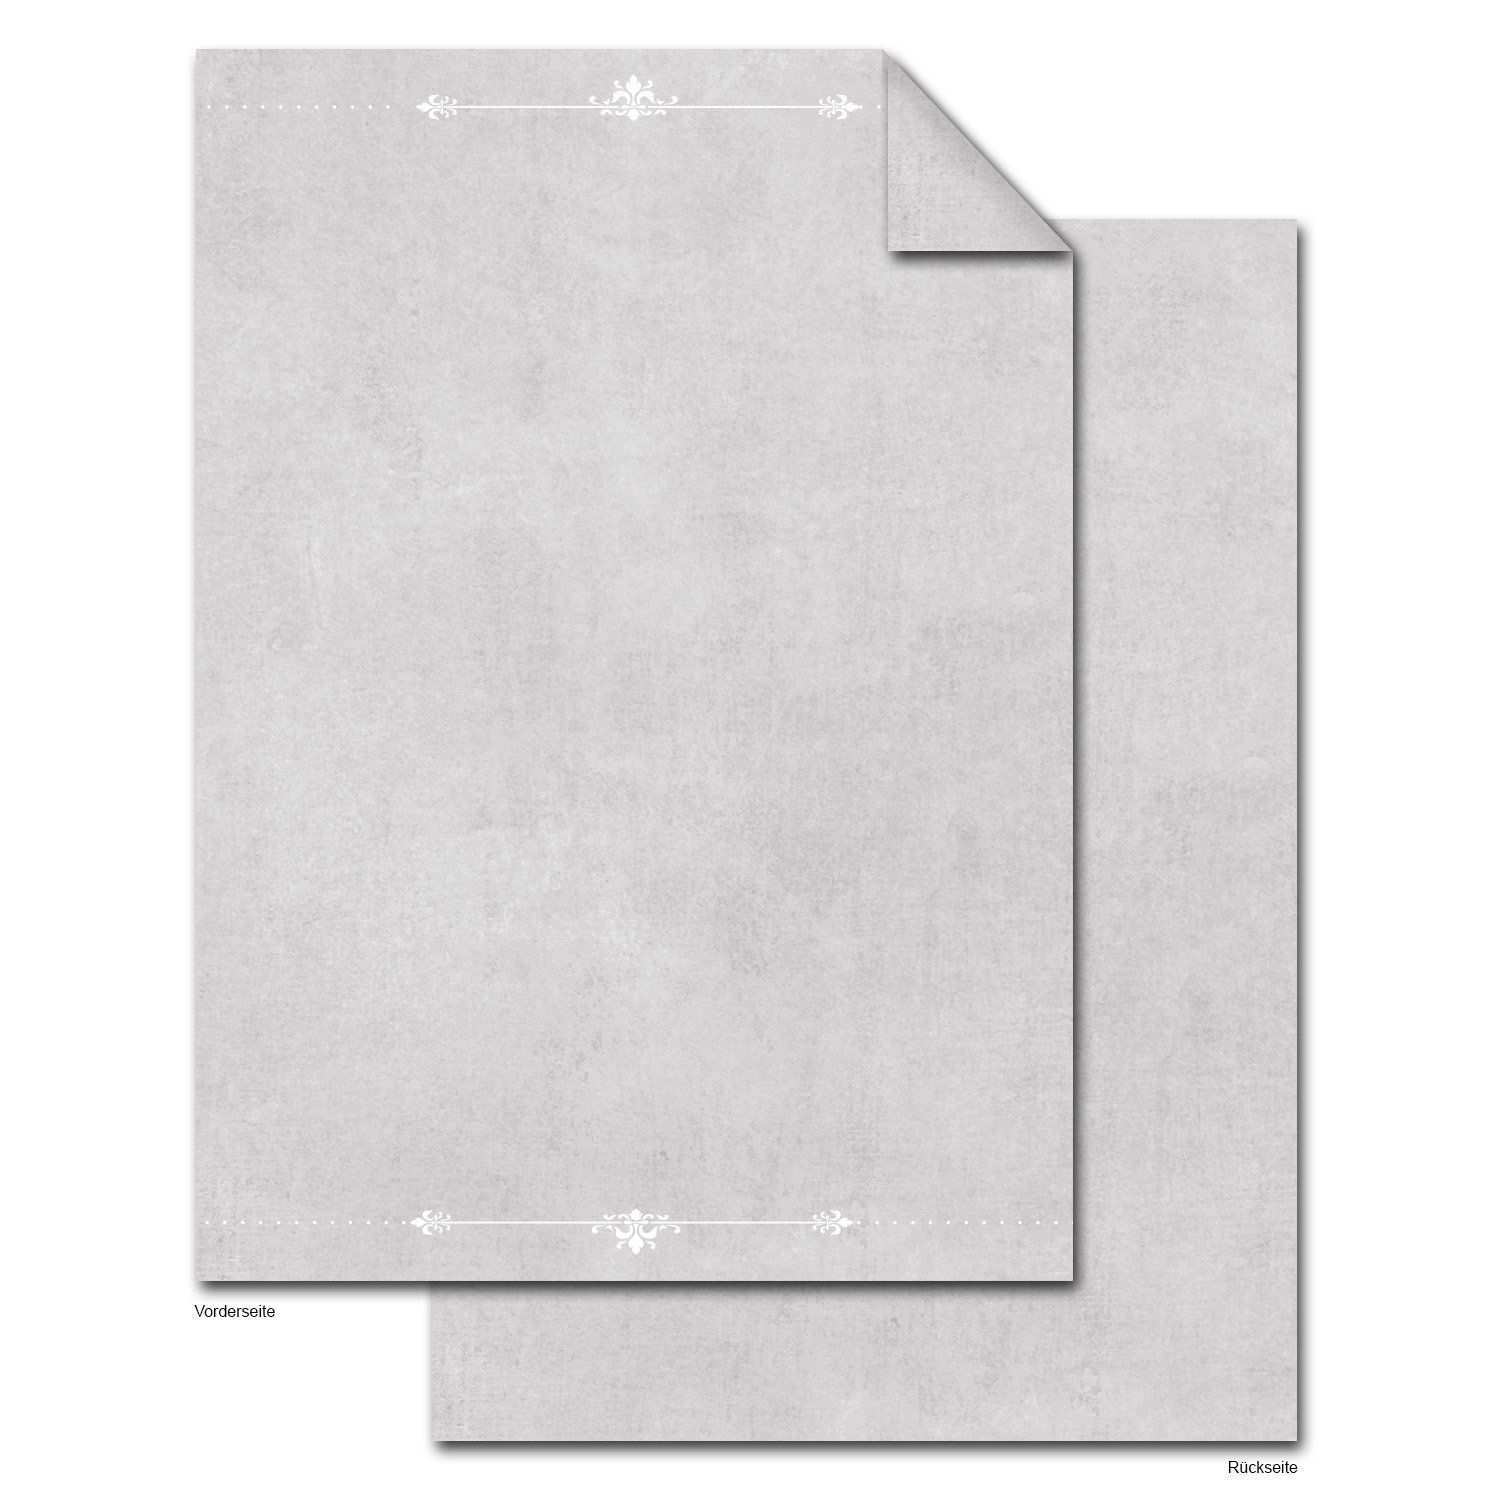 50 Blatt Din A4 Briefpapier Grau Weisse Ornamente 100g Beidseitig Bedruckt Als Drucker Motiv Bastel Dekor Schreib Kopie Briefpapier Druckerpapier Altes Papier